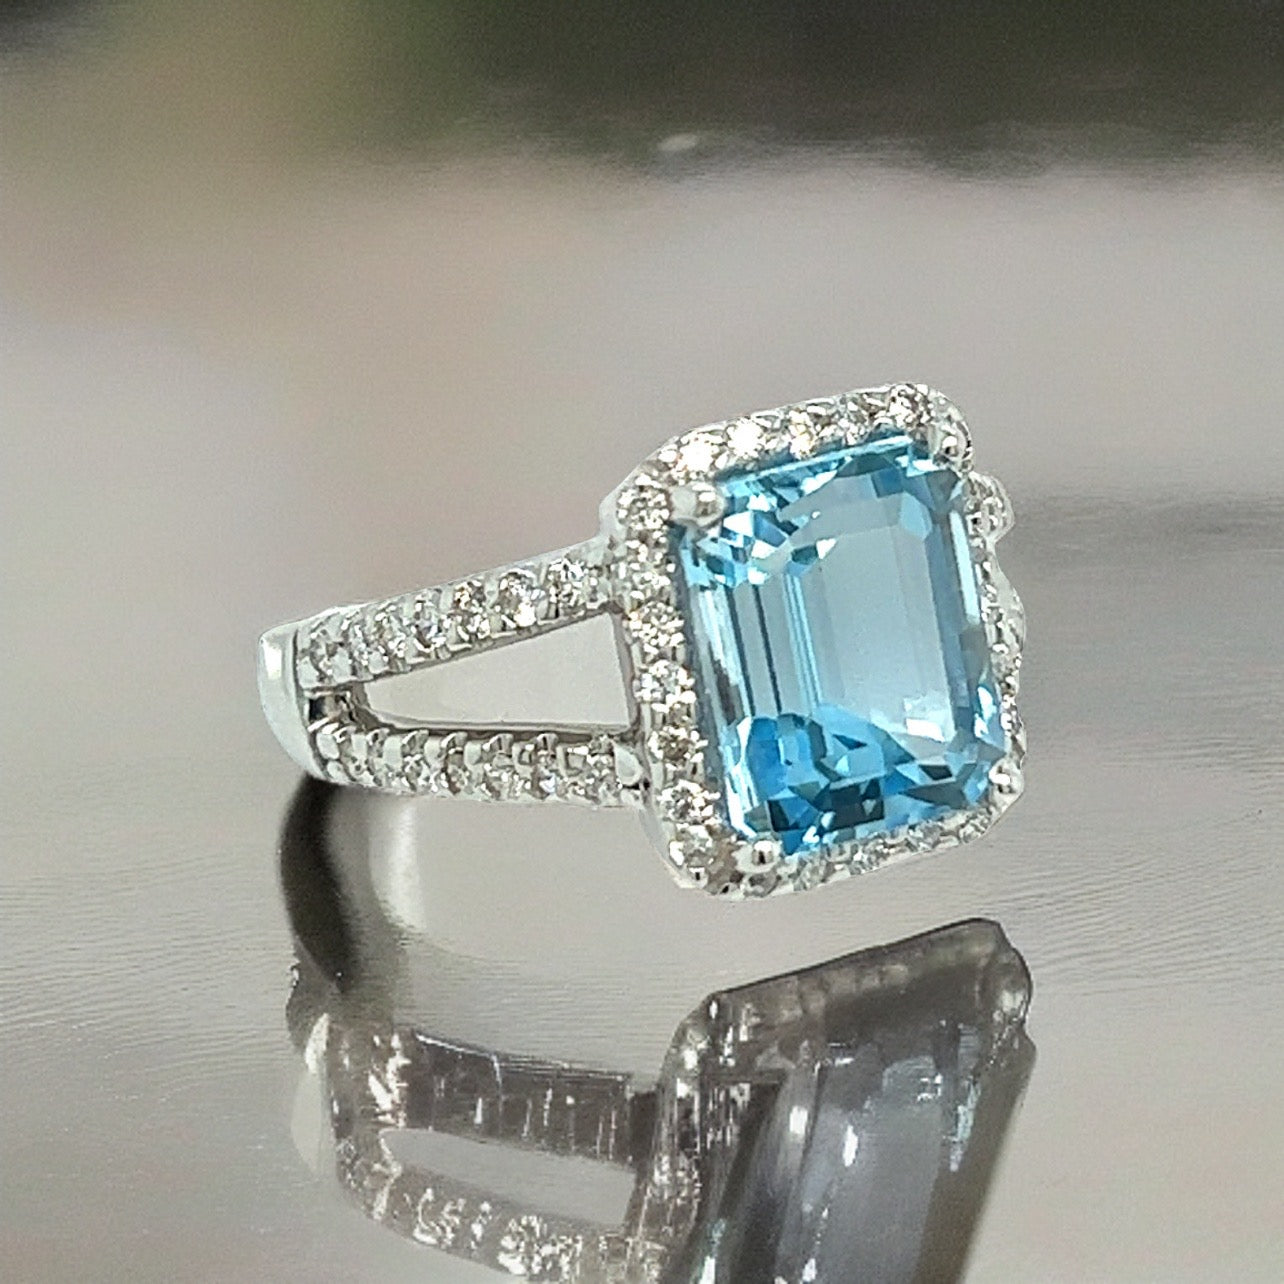 Natural Topaz Diamond Ring 6.5 14k W Gold 5.17 TCW Certified $3,950 308477 - Certified Fine Jewelry